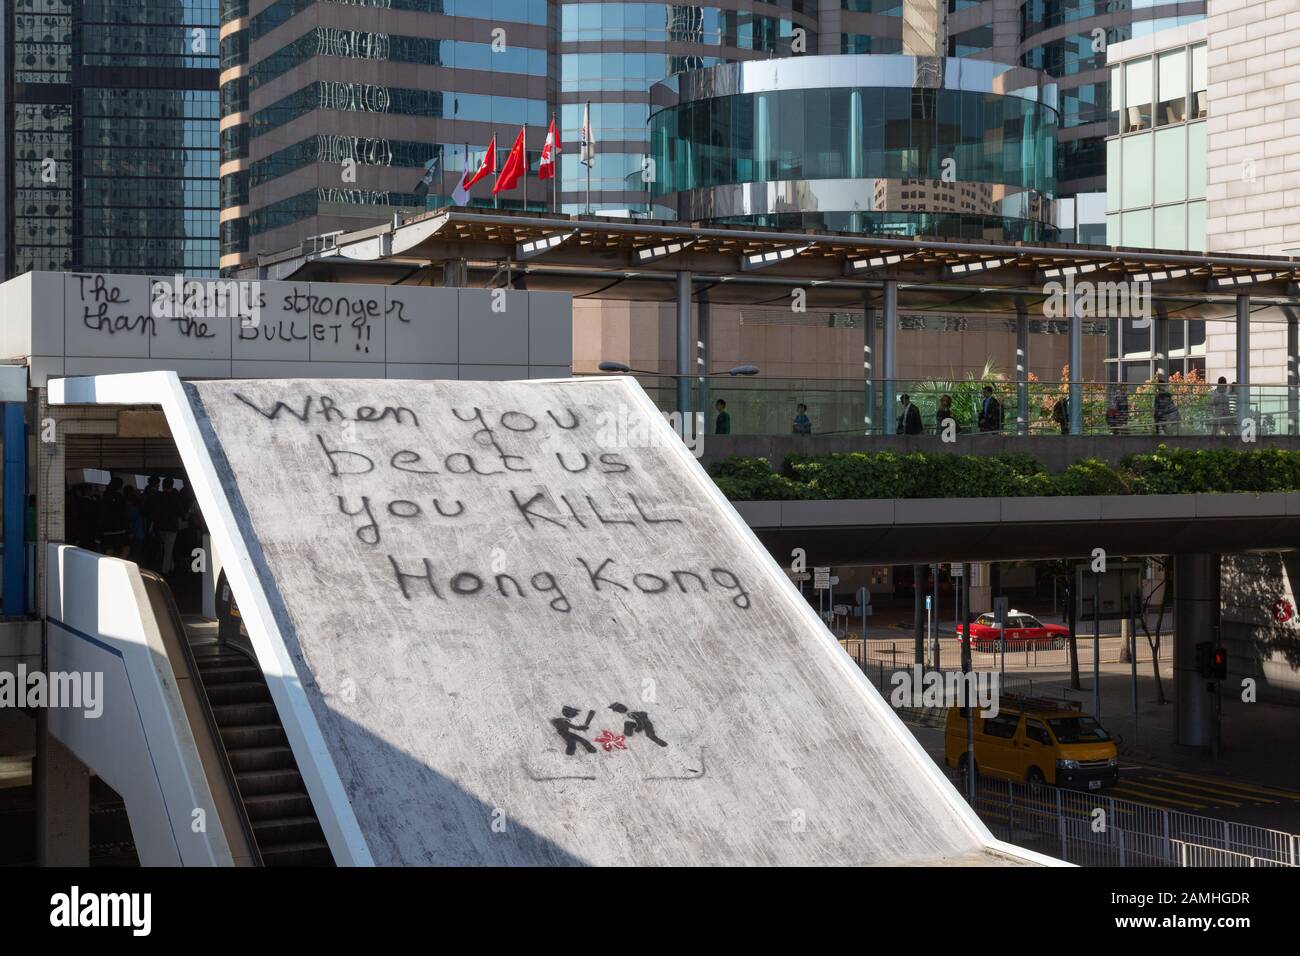 Manifestation de Hong Kong 2019 ; graffitis sur l'île de Hong Kong suite aux manifestations de Hong Kong et aux troubles civils, Hong Kong Asie Banque D'Images